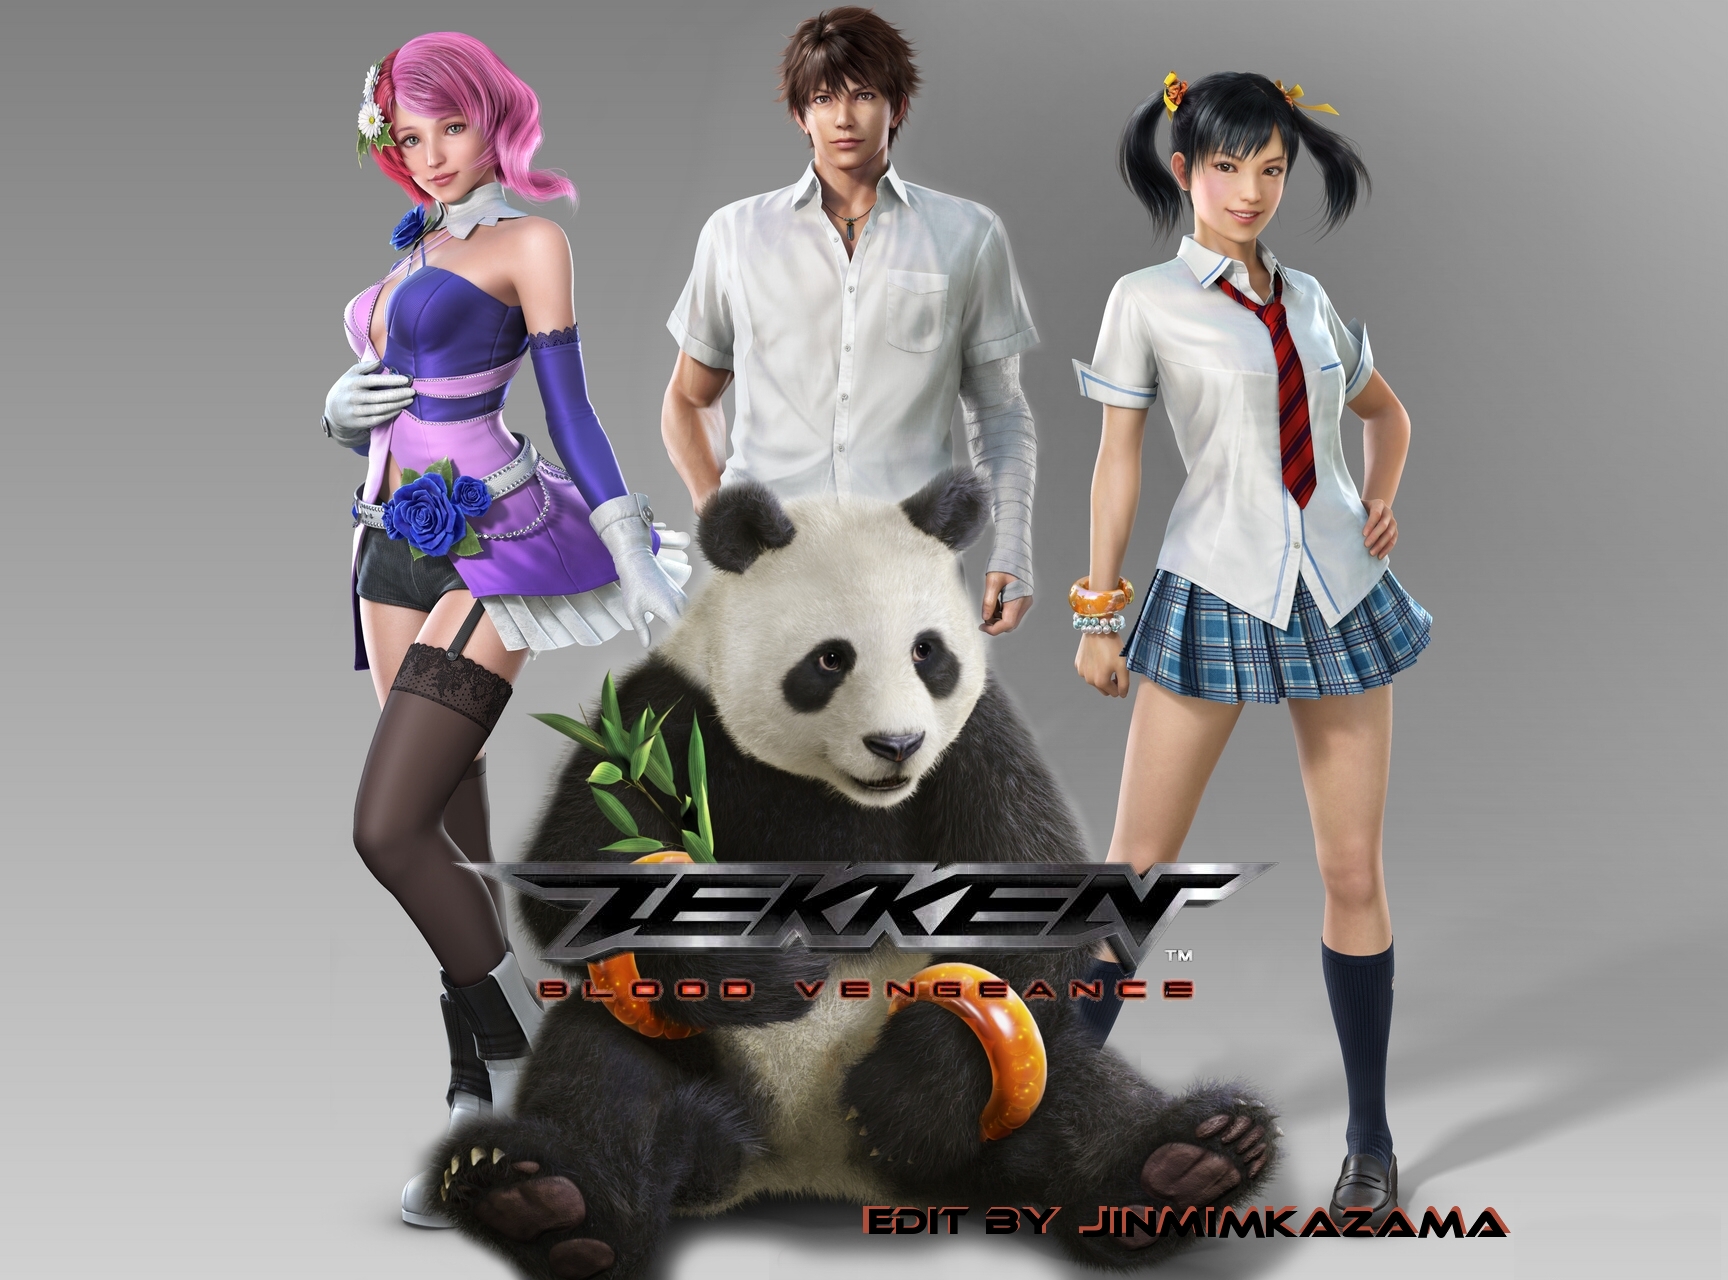 Tekken: Blood Vengeance Backgrounds, Compatible - PC, Mobile, Gadgets| 1728x1280 px